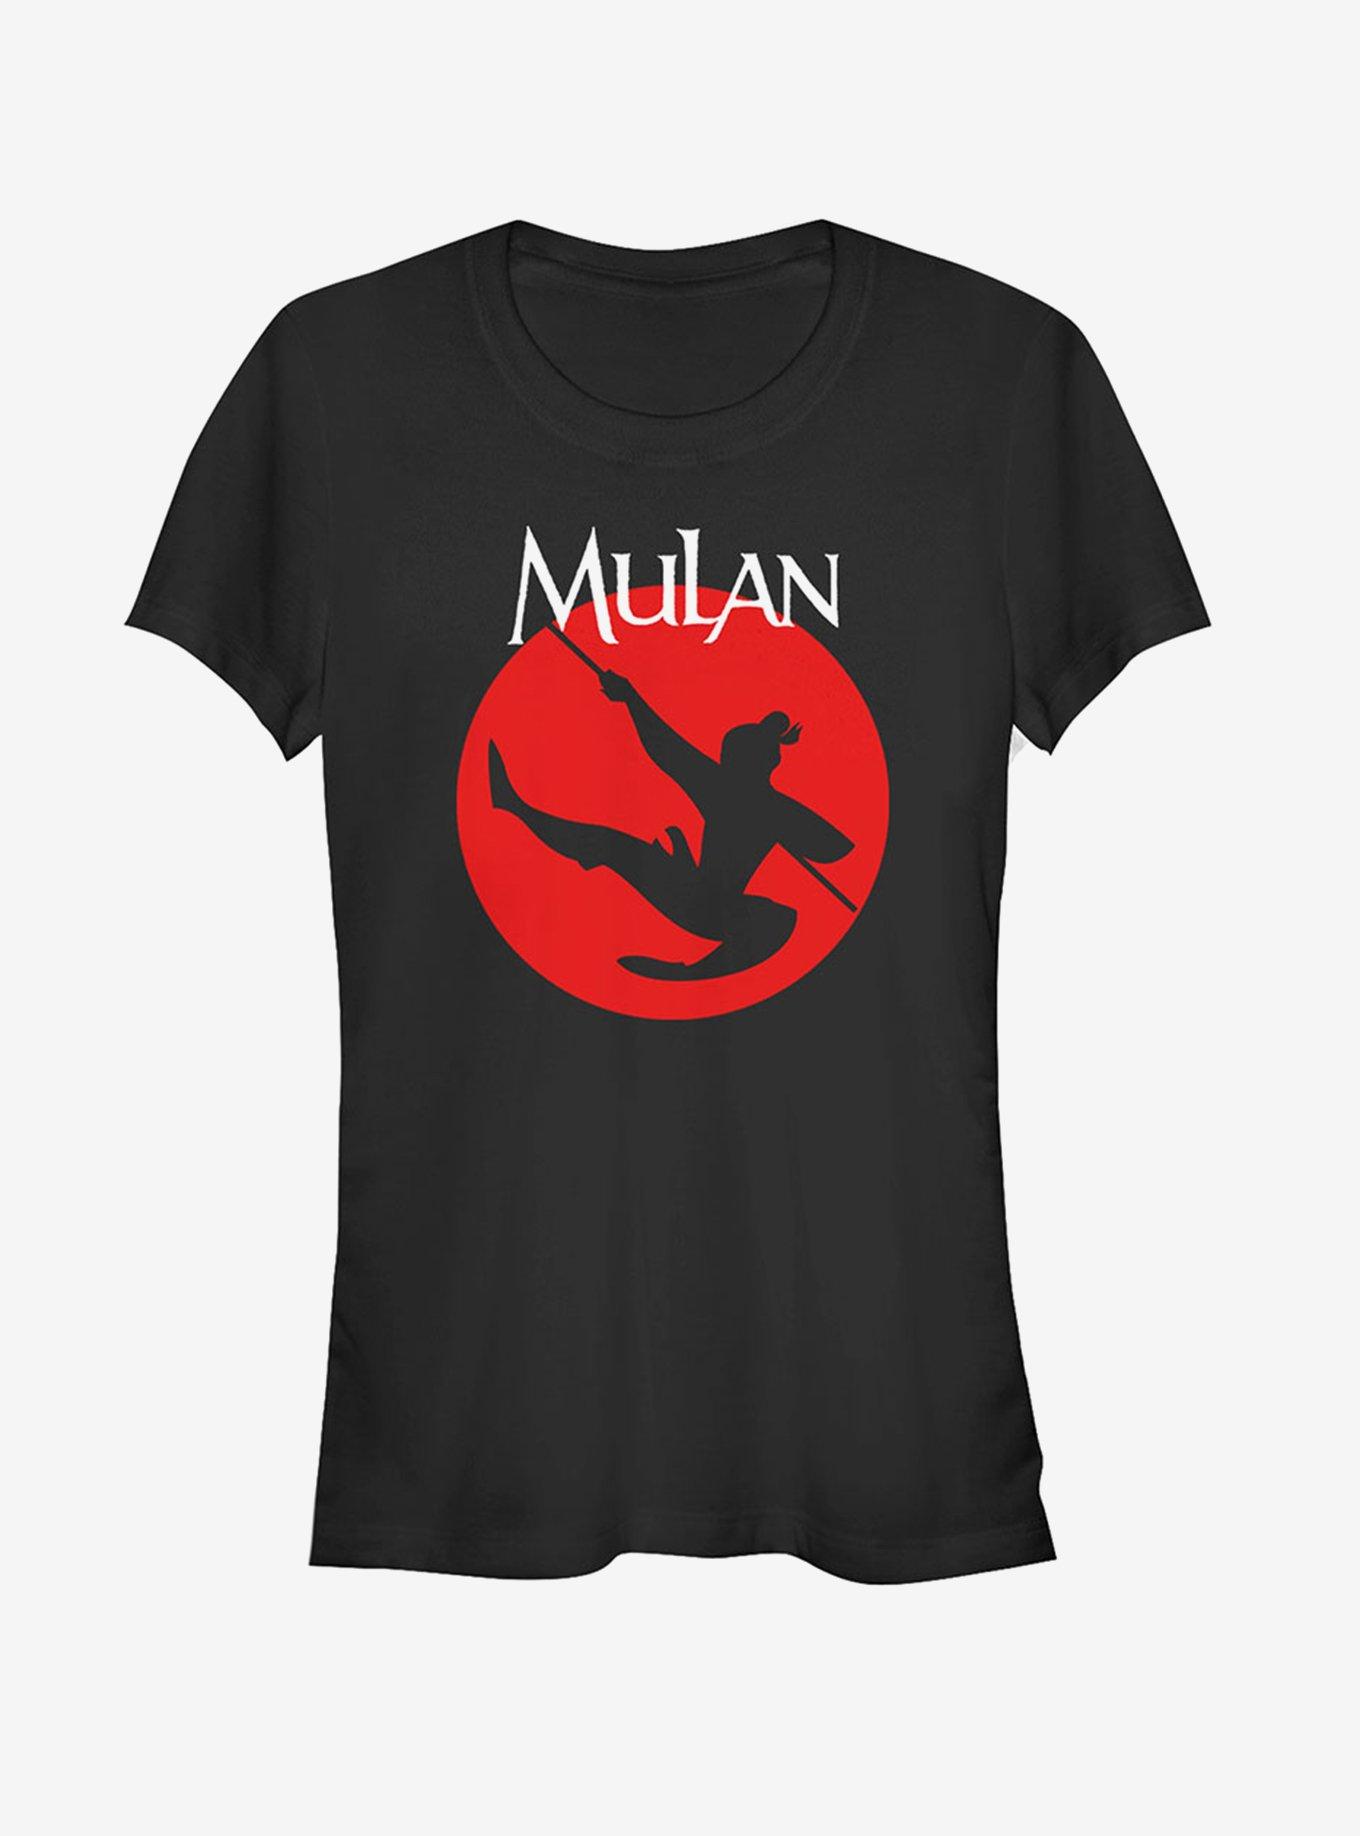 Disney Mulan Warrior Silhouette Girls T-Shirt, BLACK, hi-res